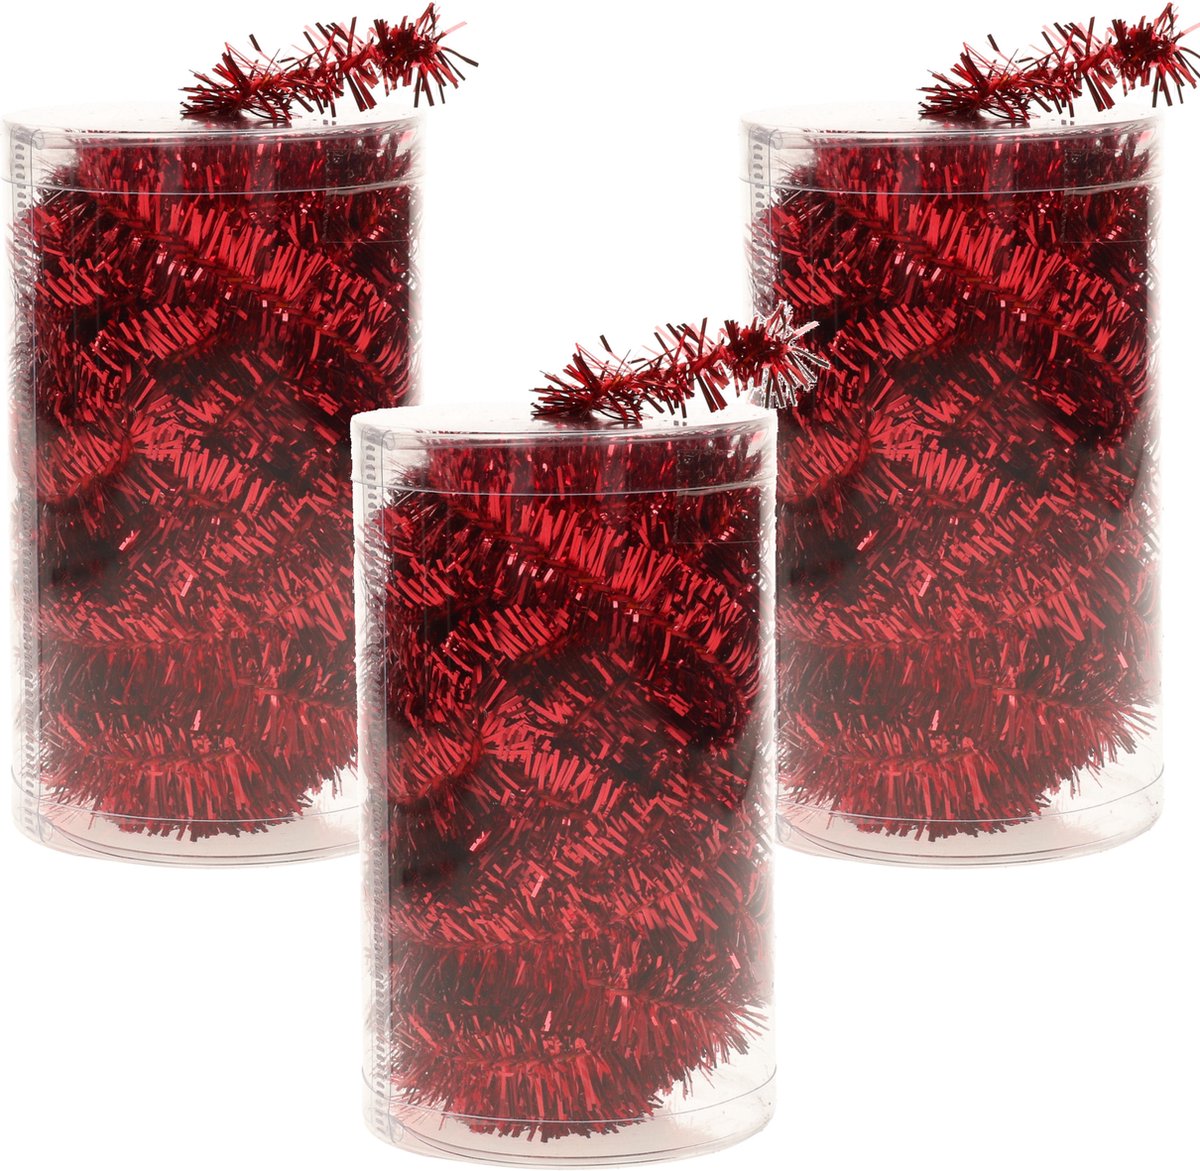 3x stuks folie tinsel slingers/guirlandes rood 20 meter kerstslingers extra lang - Kerstversiering - Kerstboomversiering